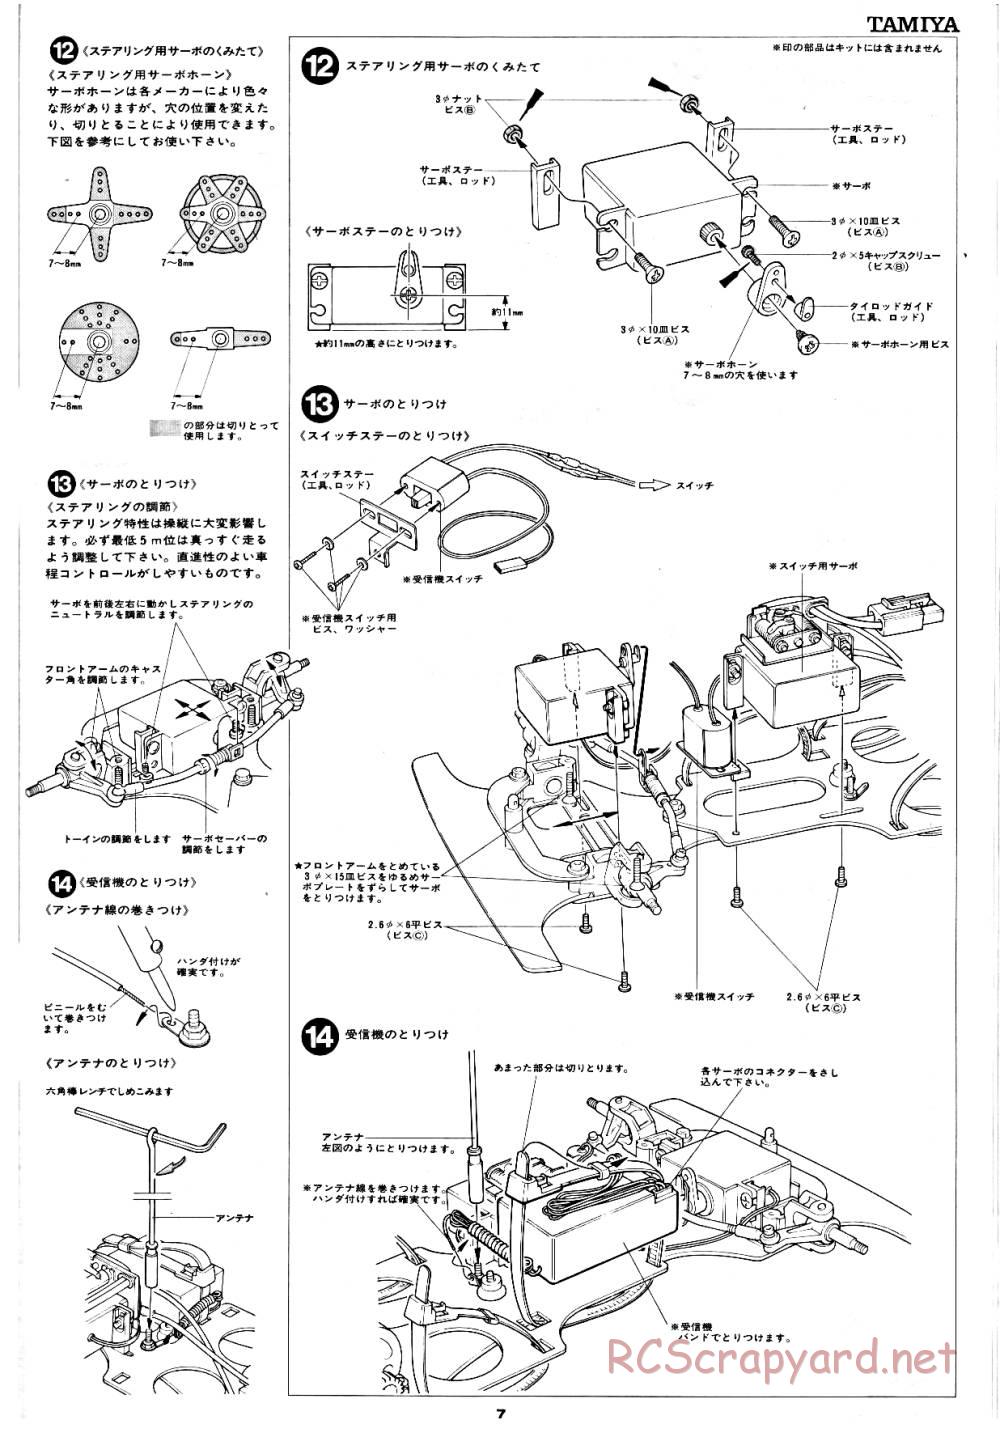 Tamiya - Tornado - RM MK.3 - 58032 - Manual - Page 7